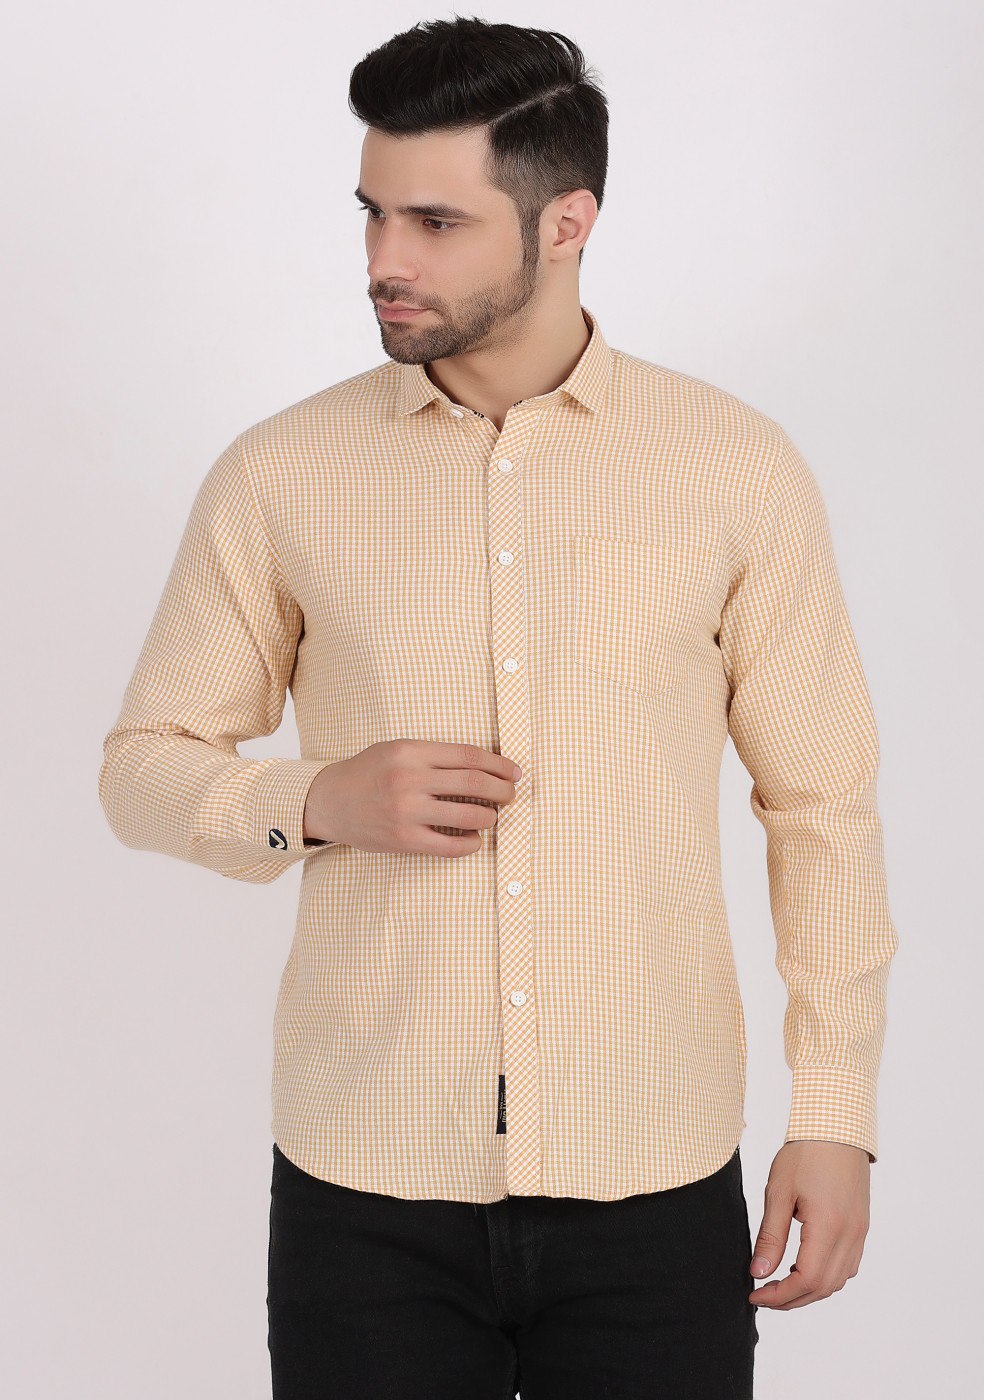 ASHTOM Mustard Color Small Check Shirt For Men